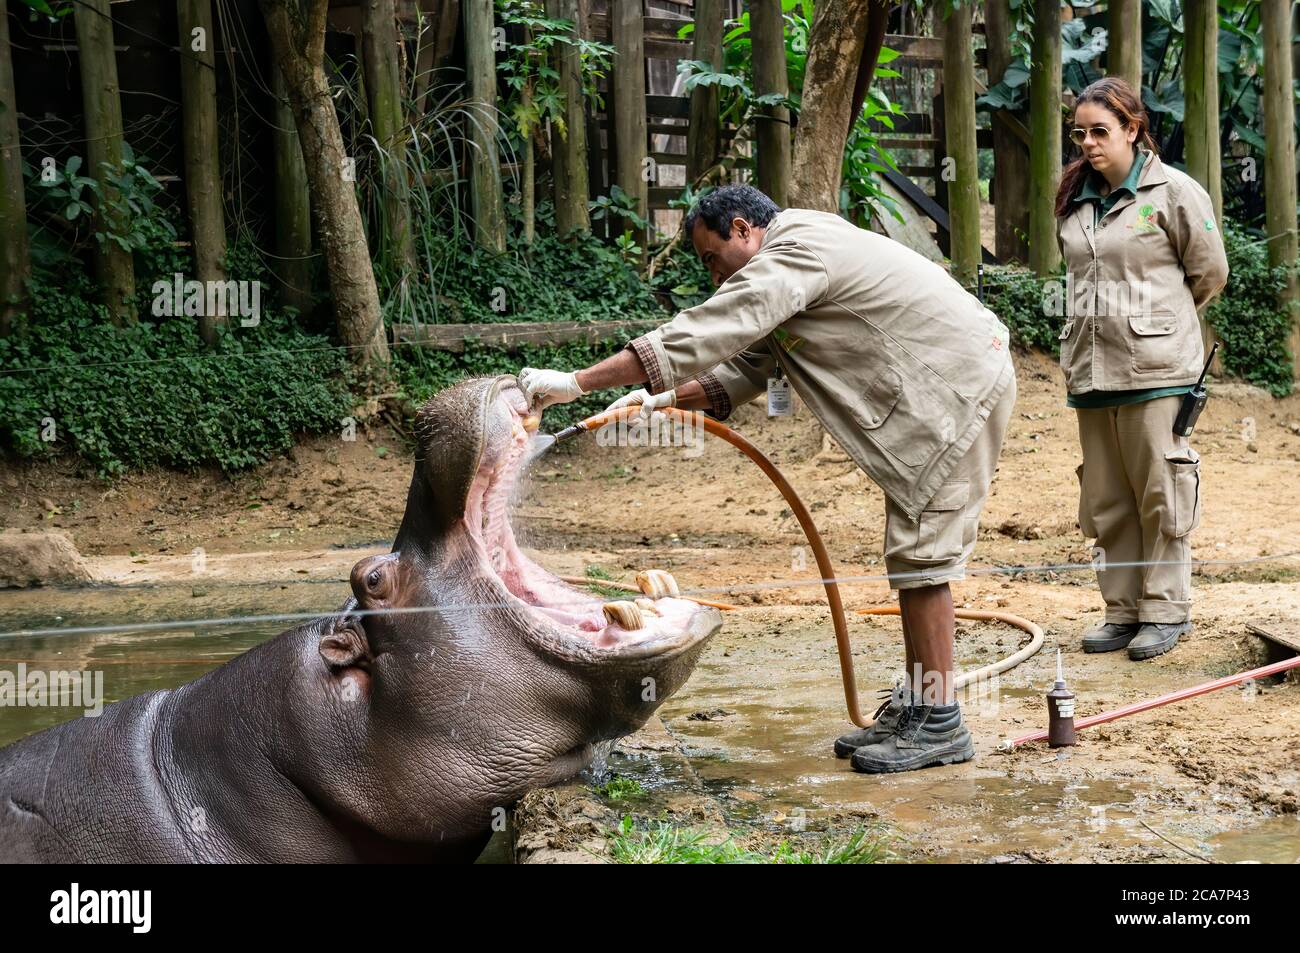 Ippopotamo (Hippopotamus anfibio - grande, per lo più erbivoro, mammifero semiacquatico) che ha la sua bocca lavata da un custode dello zoo nel parco Safari Zoo. Foto Stock